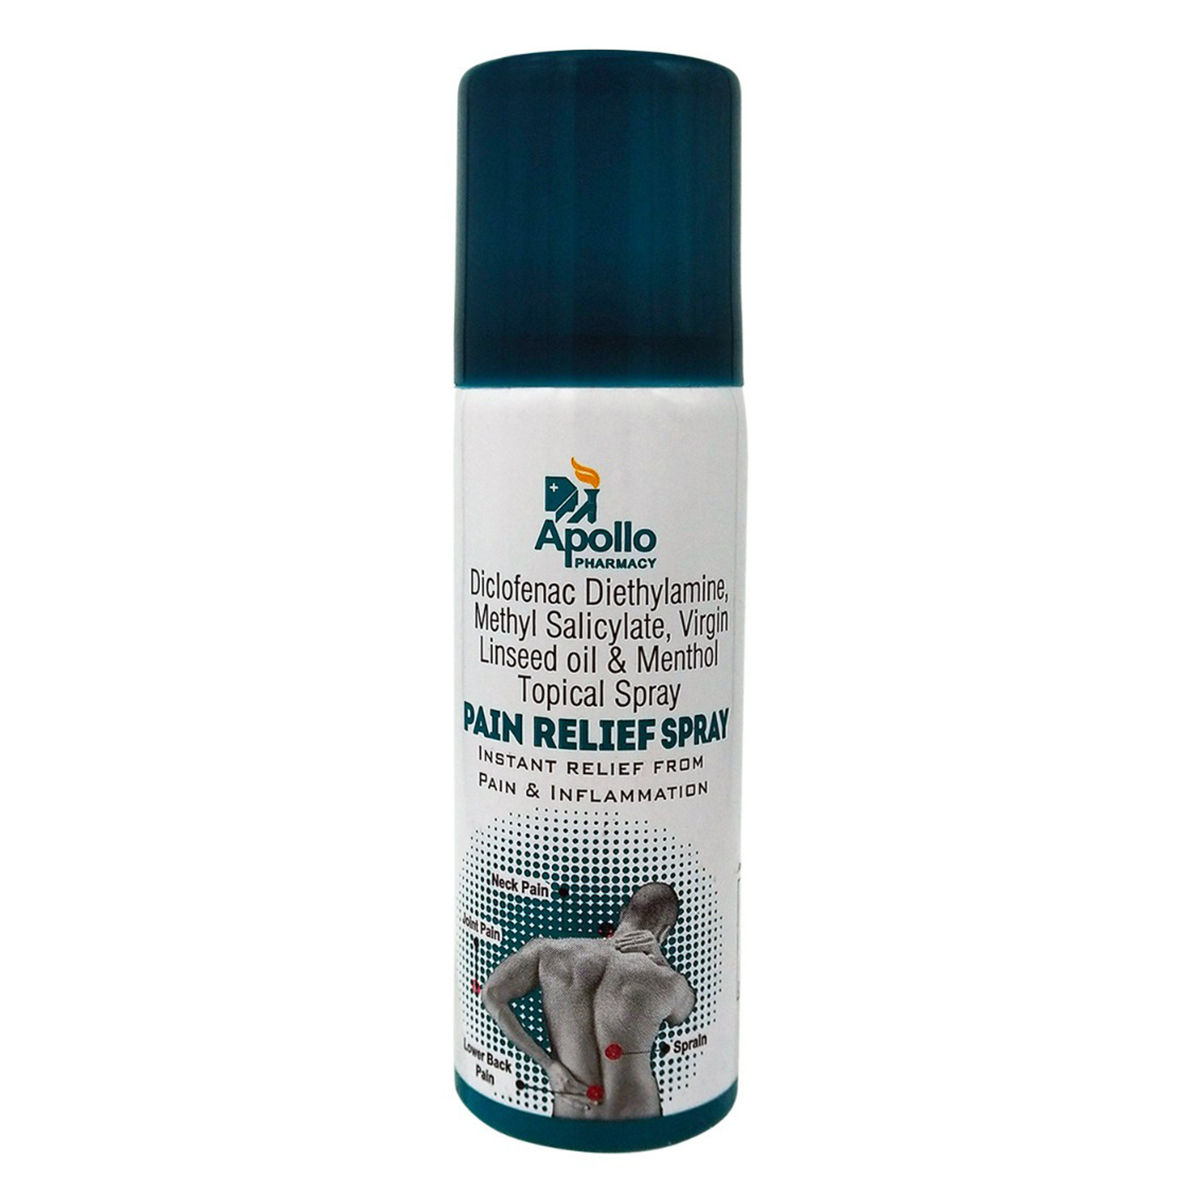 Buy Apollo Pharmacy Pain Relief Spray, 50 ml Online